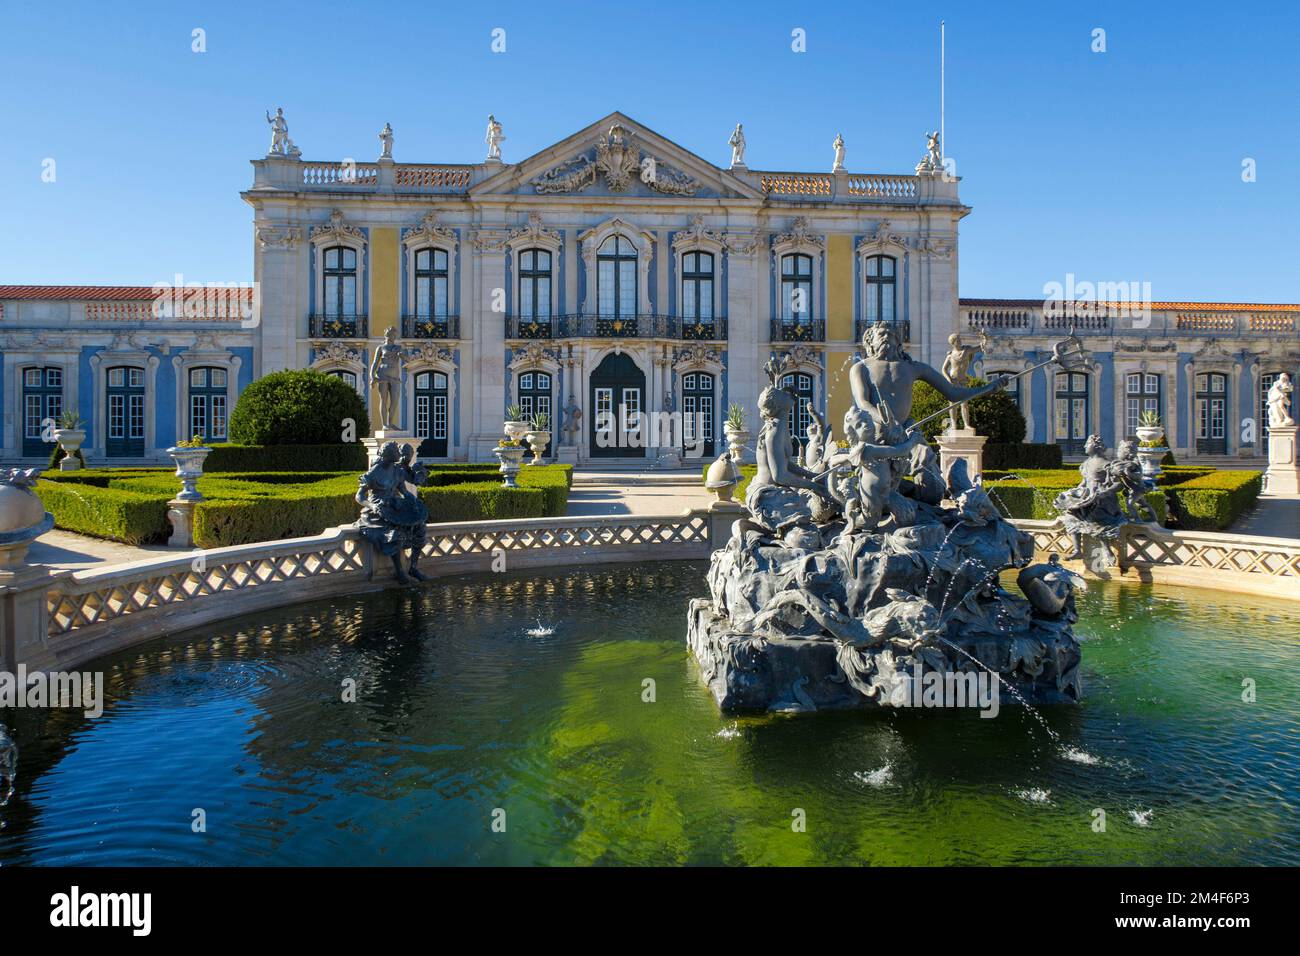 Fontaine d'eau ornée sur les jardins du Palais de Queluz du 18e siècle - Palácio Nacional de Queluz - au Portugal, en Europe Banque D'Images